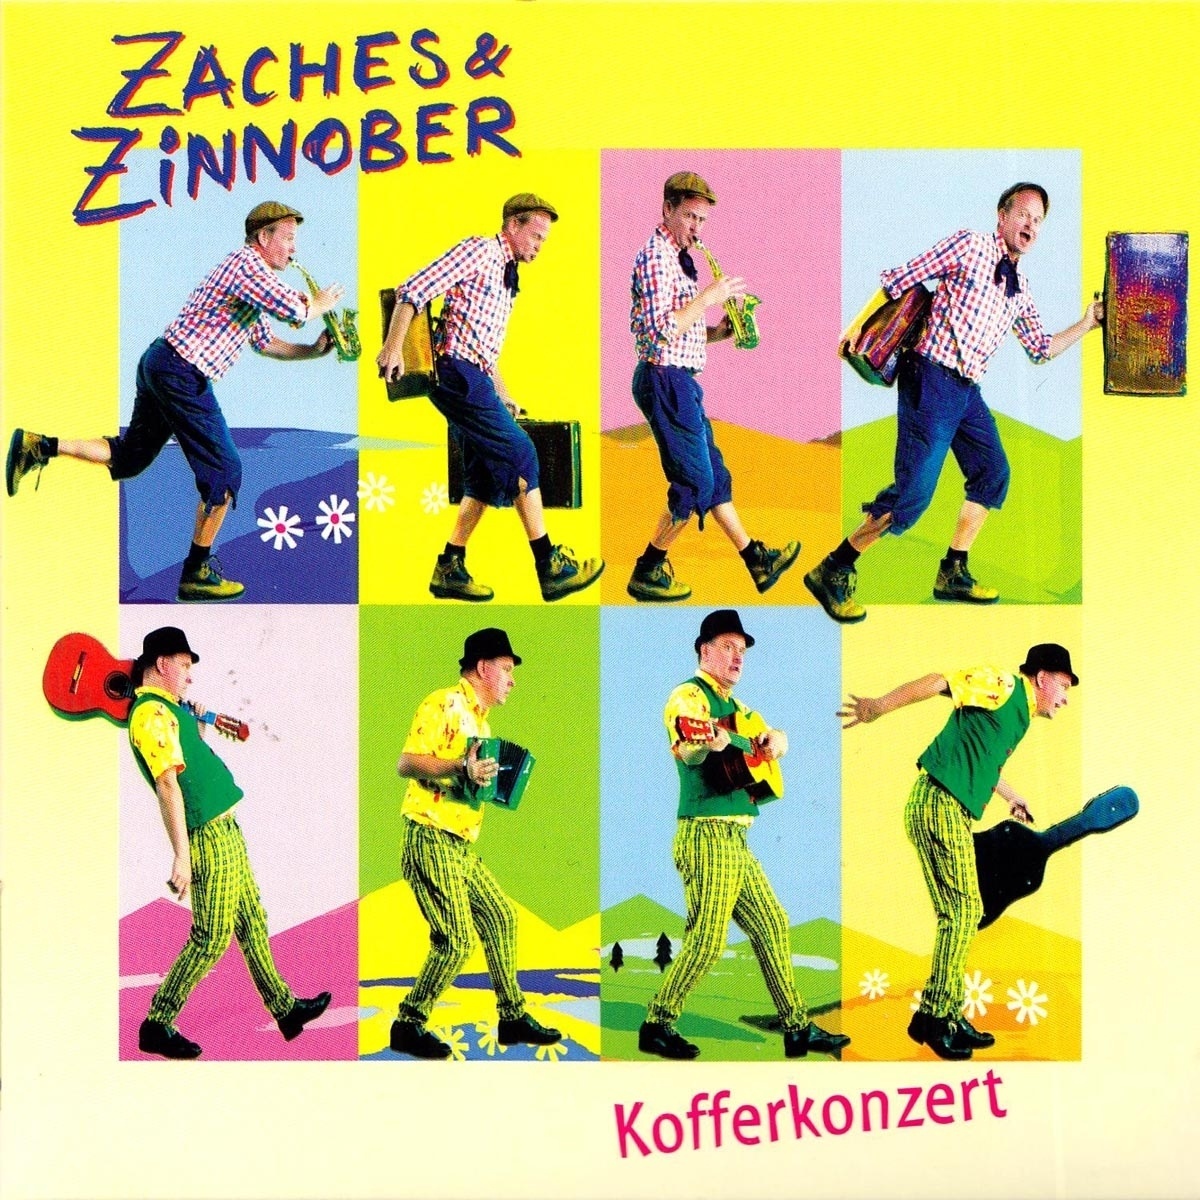 Kofferkonzert - Zaches & Zinnober. (CD)